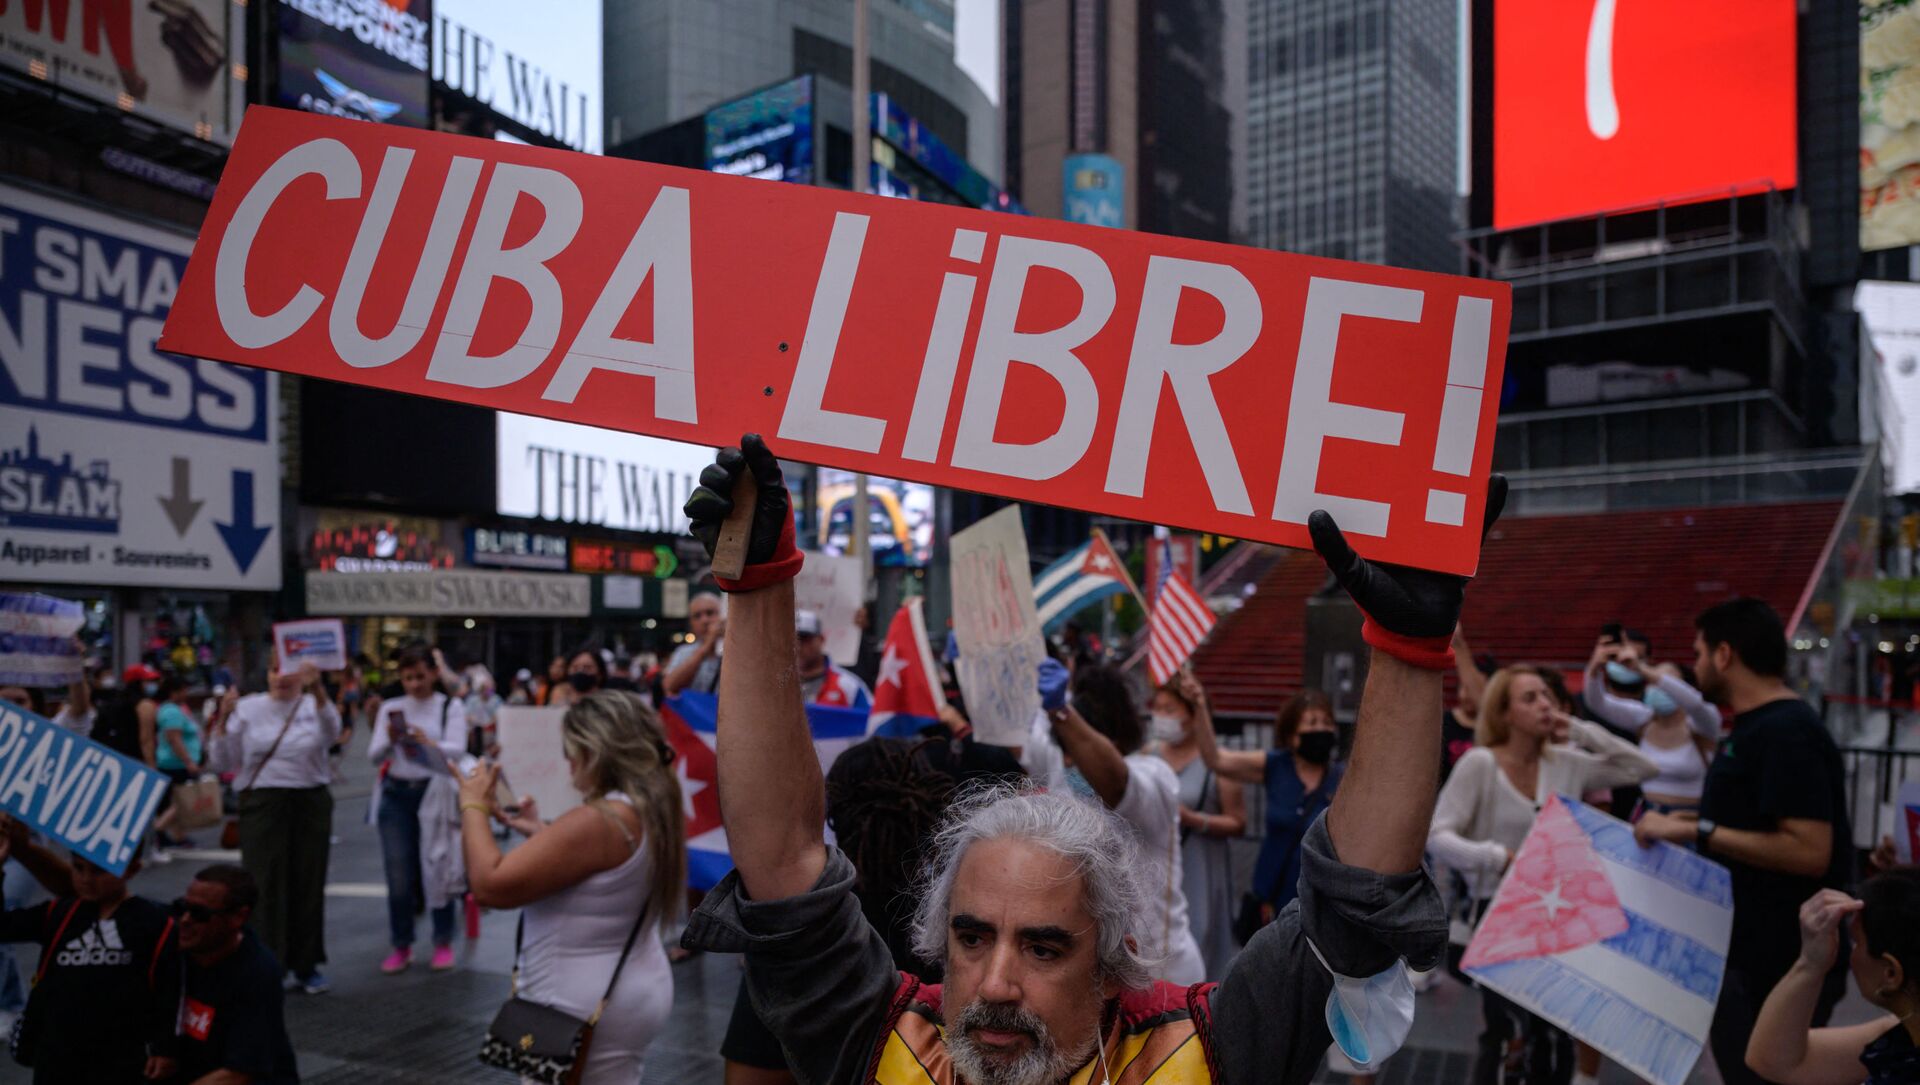 Người biểu tình cầm biểu ngữ trong một cuộc mít tinh được tổ chức đoàn kết với các cuộc biểu tình chống chính phủ ở Cuba, tại Quảng trường Thời đại, New York vào ngày 13 tháng 7 năm 2021. - Một người chết và hơn 100 người khác, bao gồm các nhà báo độc lập và nhà bất đồng chính kiến, đã bị bắt sau khi chưa từng có tiền lệ Các nhà quan sát và các nhà hoạt động cho biết các cuộc biểu tình chống chính phủ ở Cuba, với một số người còn lại bị giam giữ hôm thứ Ba. - Sputnik Việt Nam, 1920, 20.07.2021